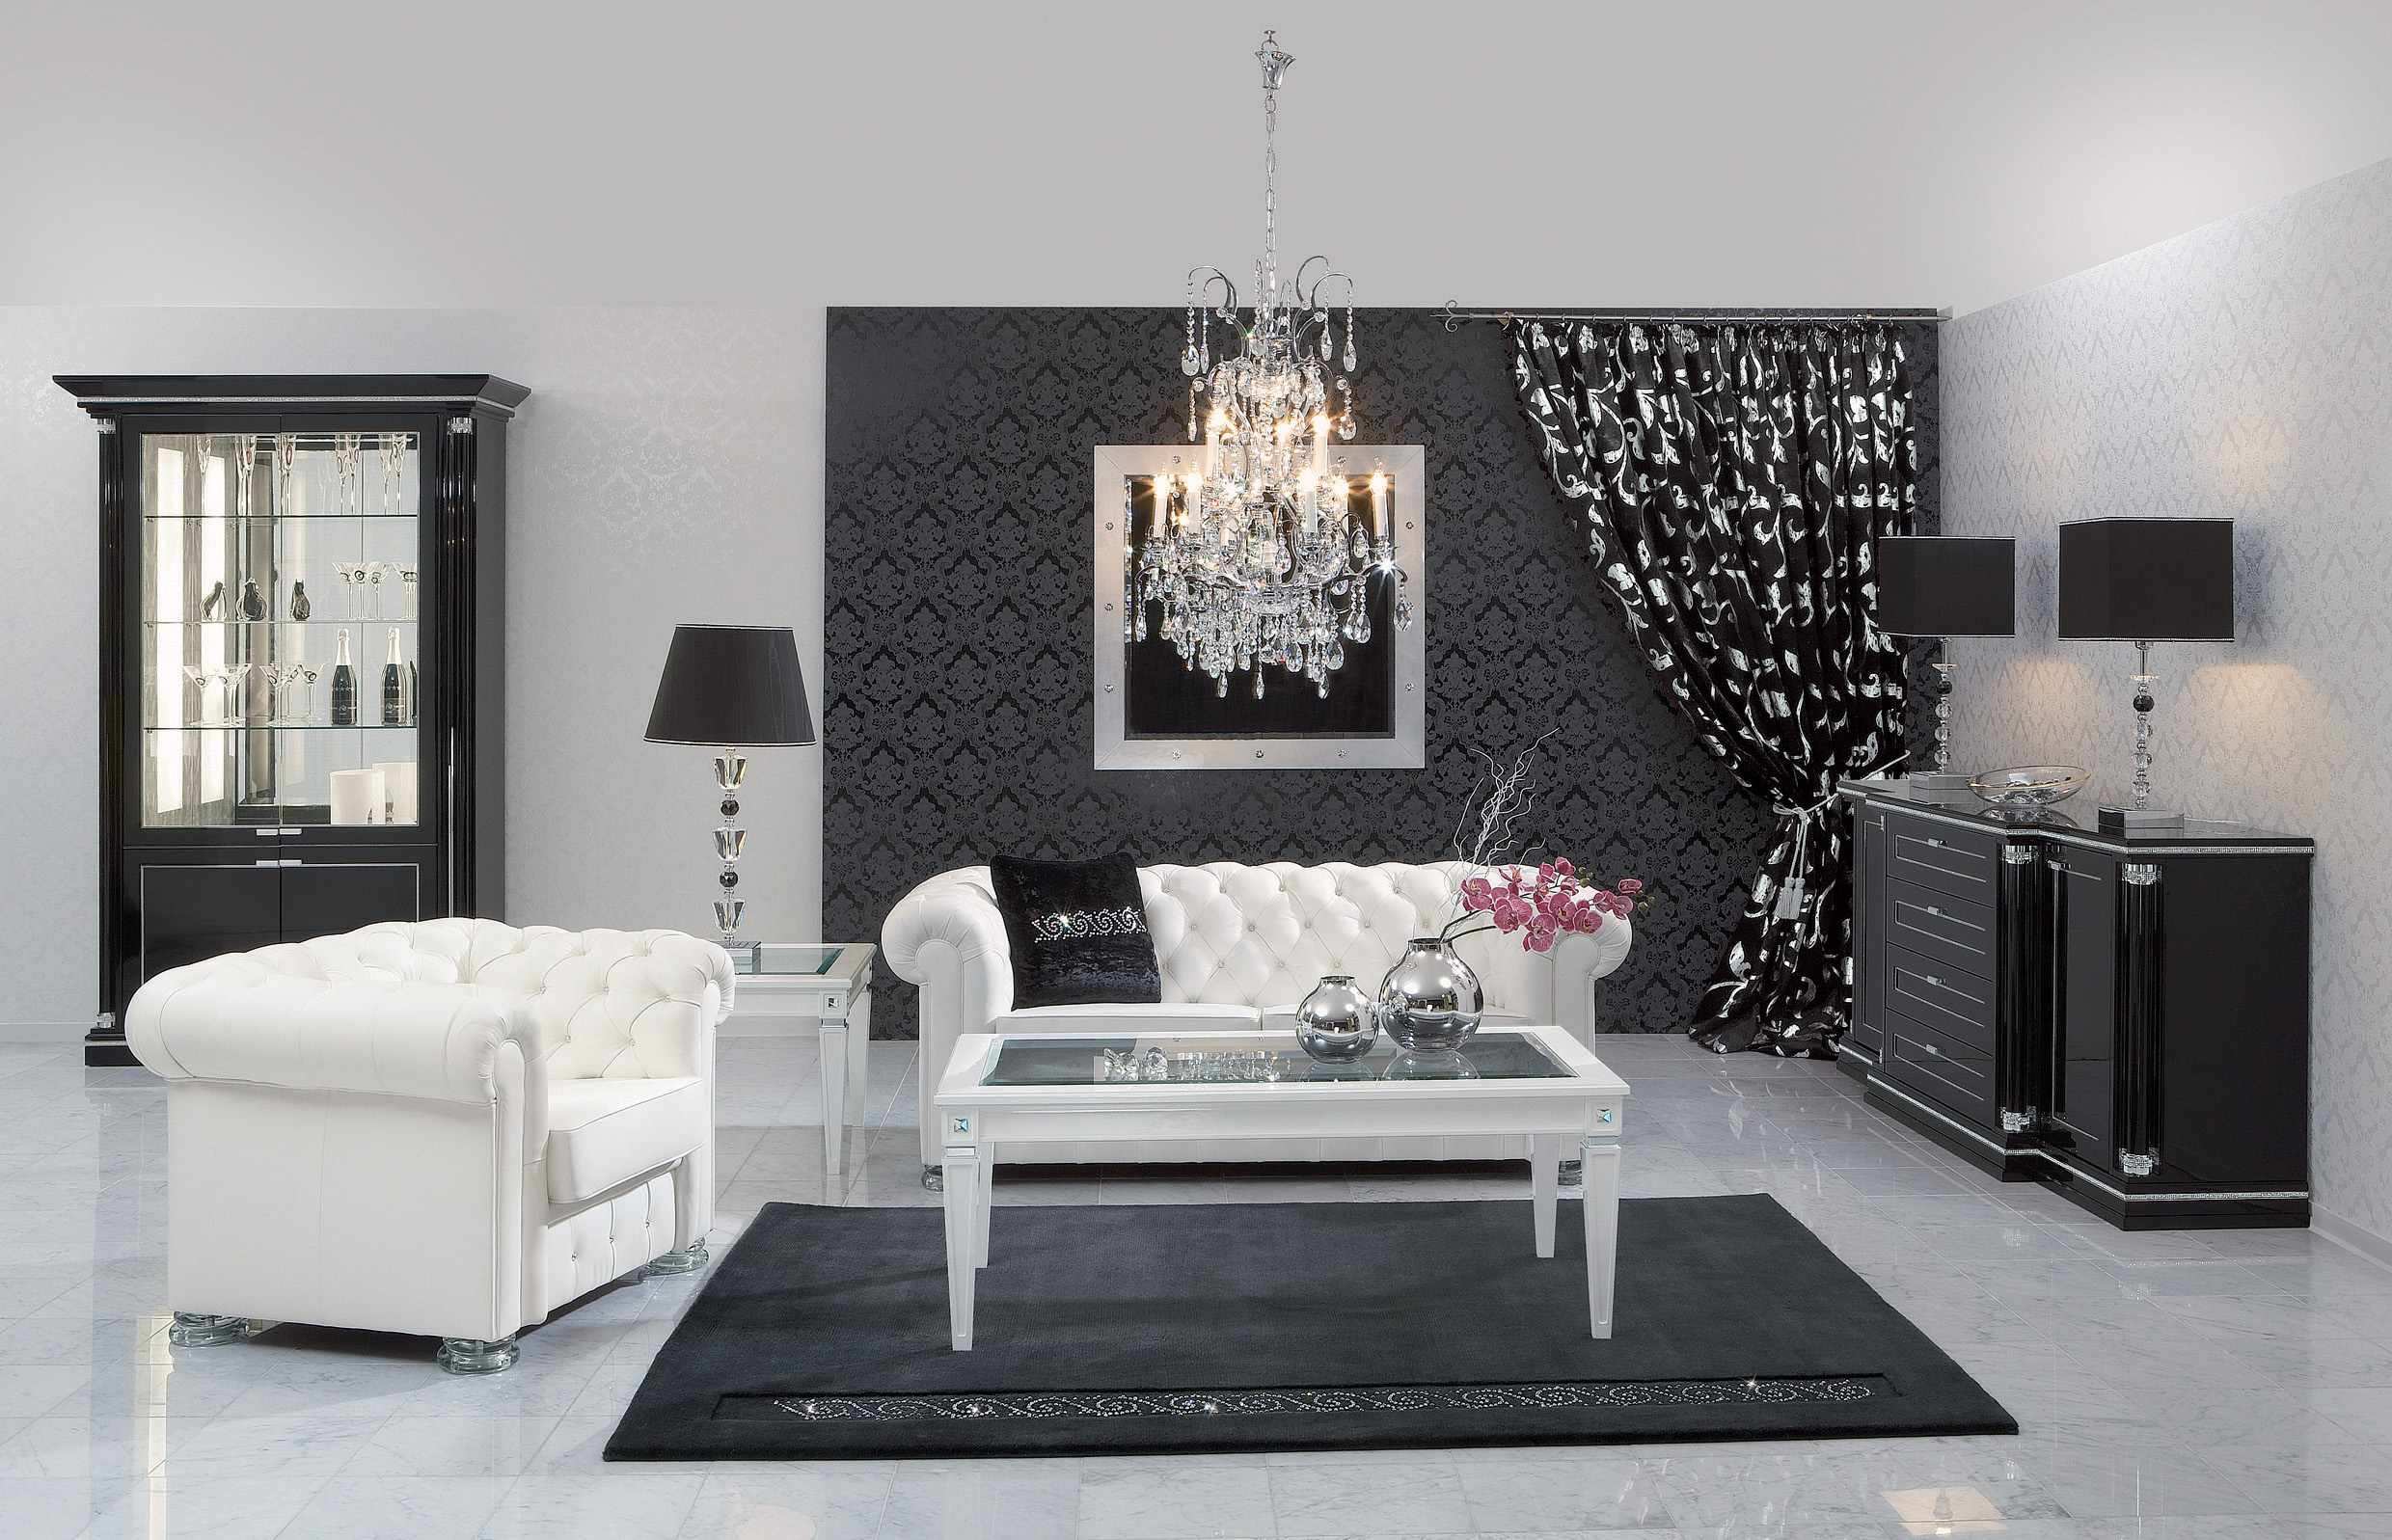 Lovely black and white living room designs